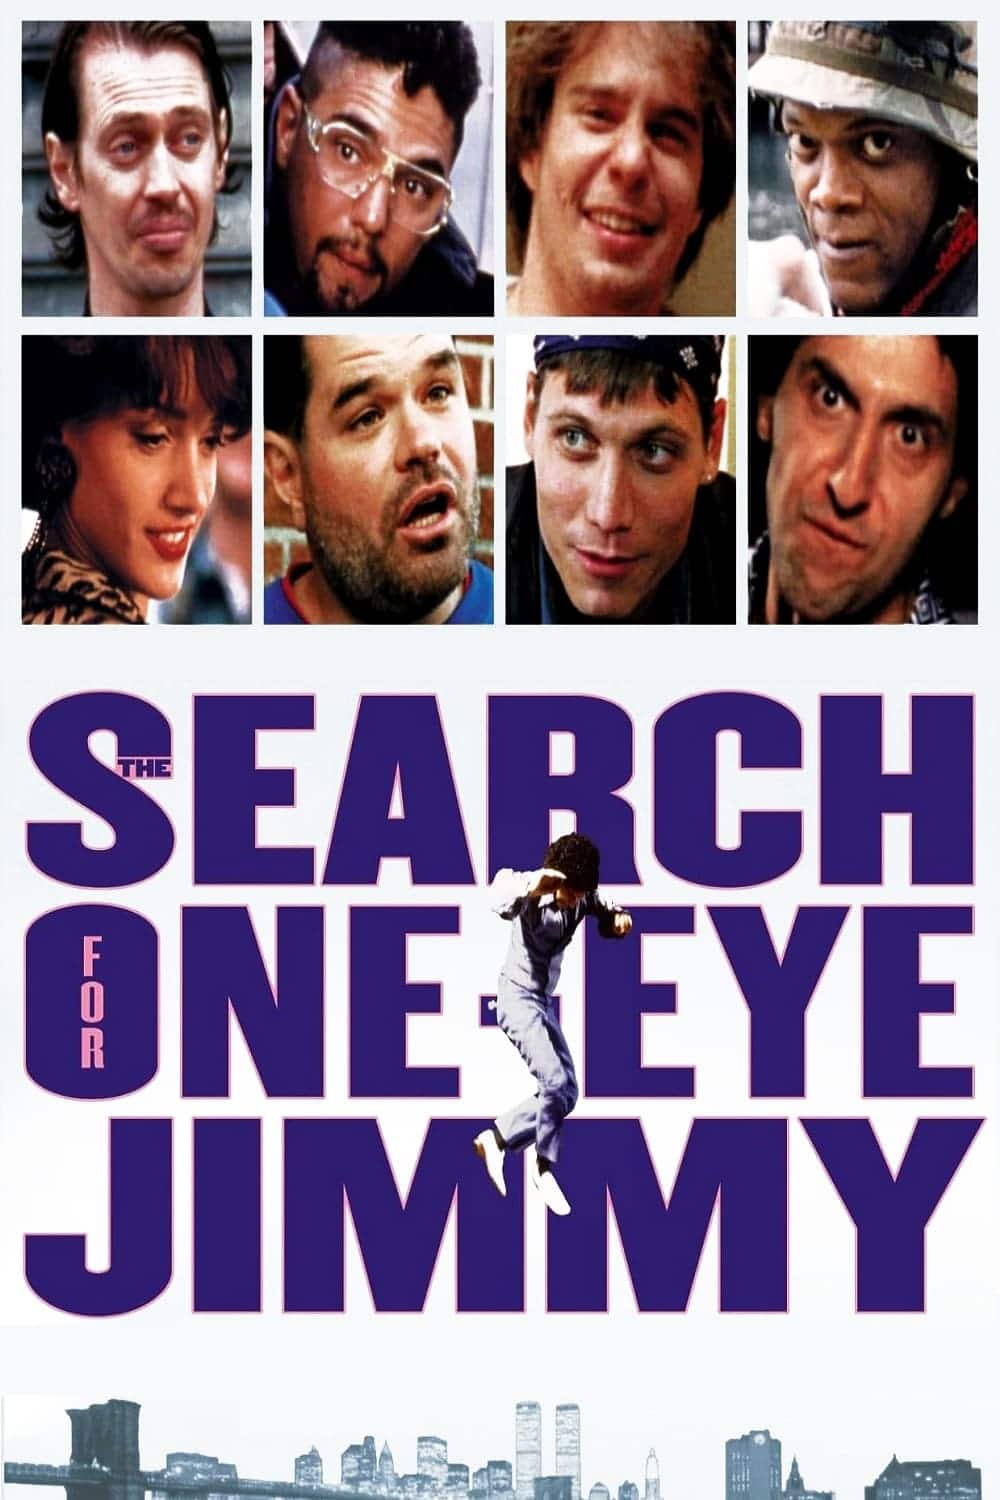 Plakat von "Auf der Suche nach Jimmy Hoyt"